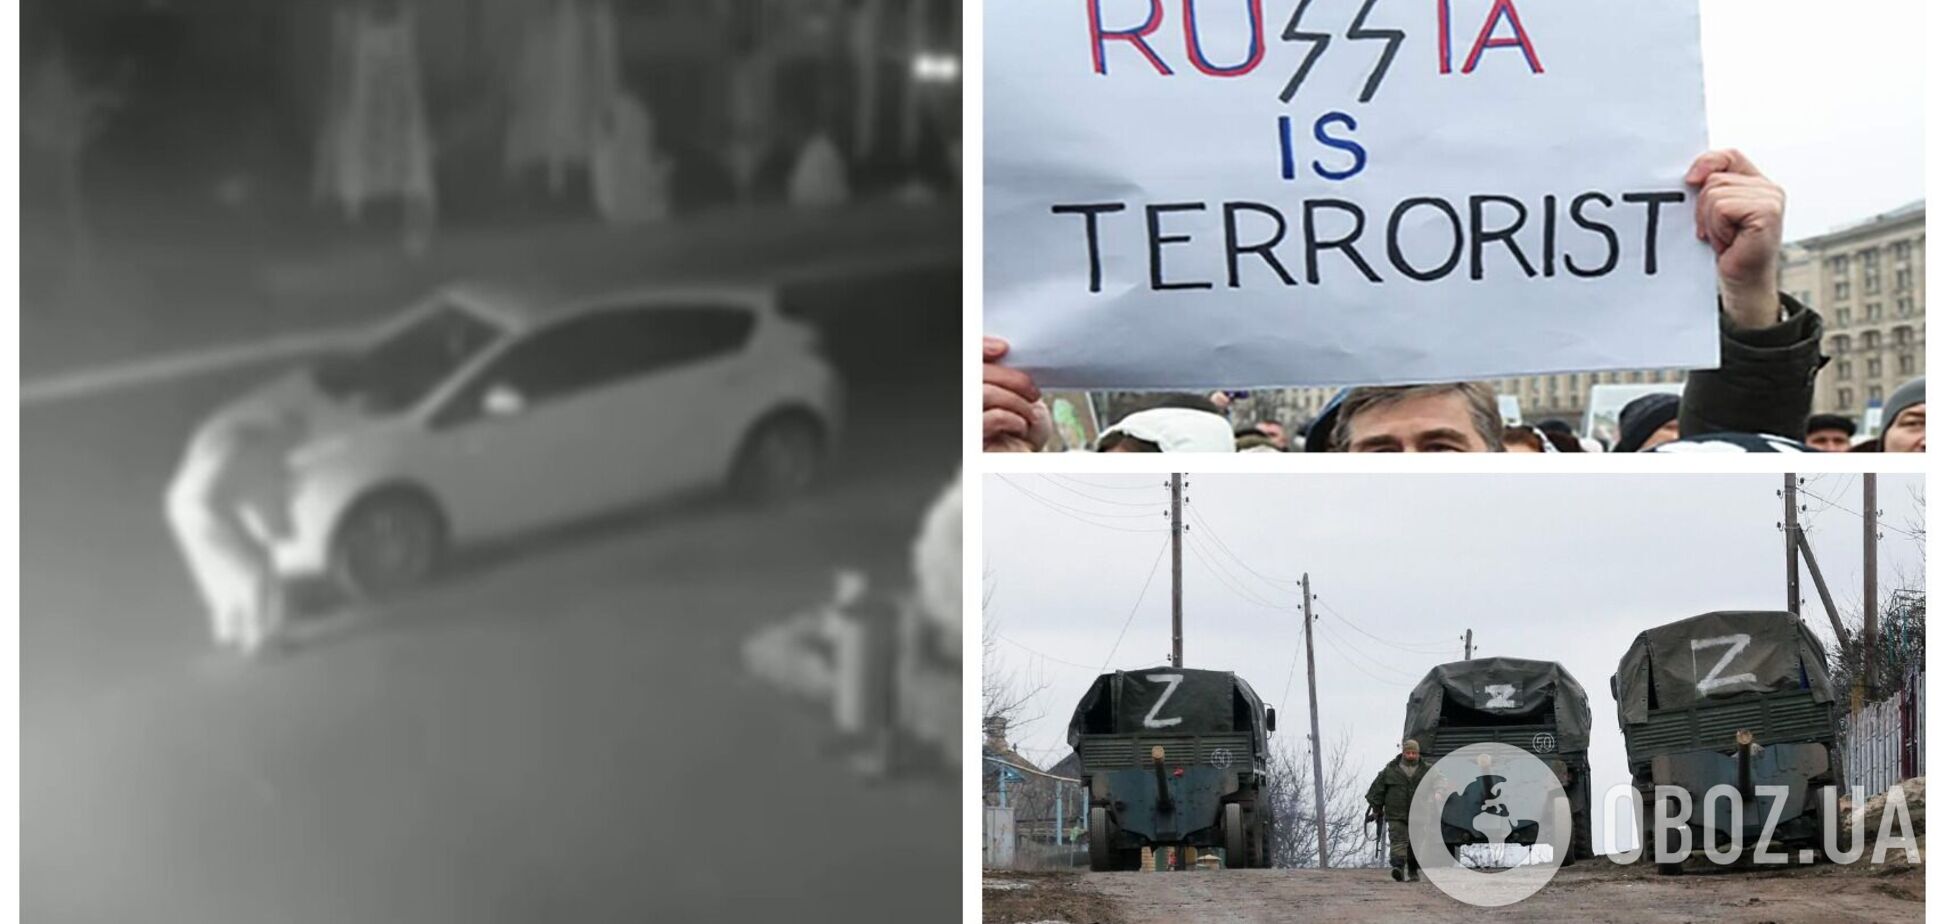 Партизаны работают: в российском Краснодаре сожгли два автомобиля с Z-символикой. Видео